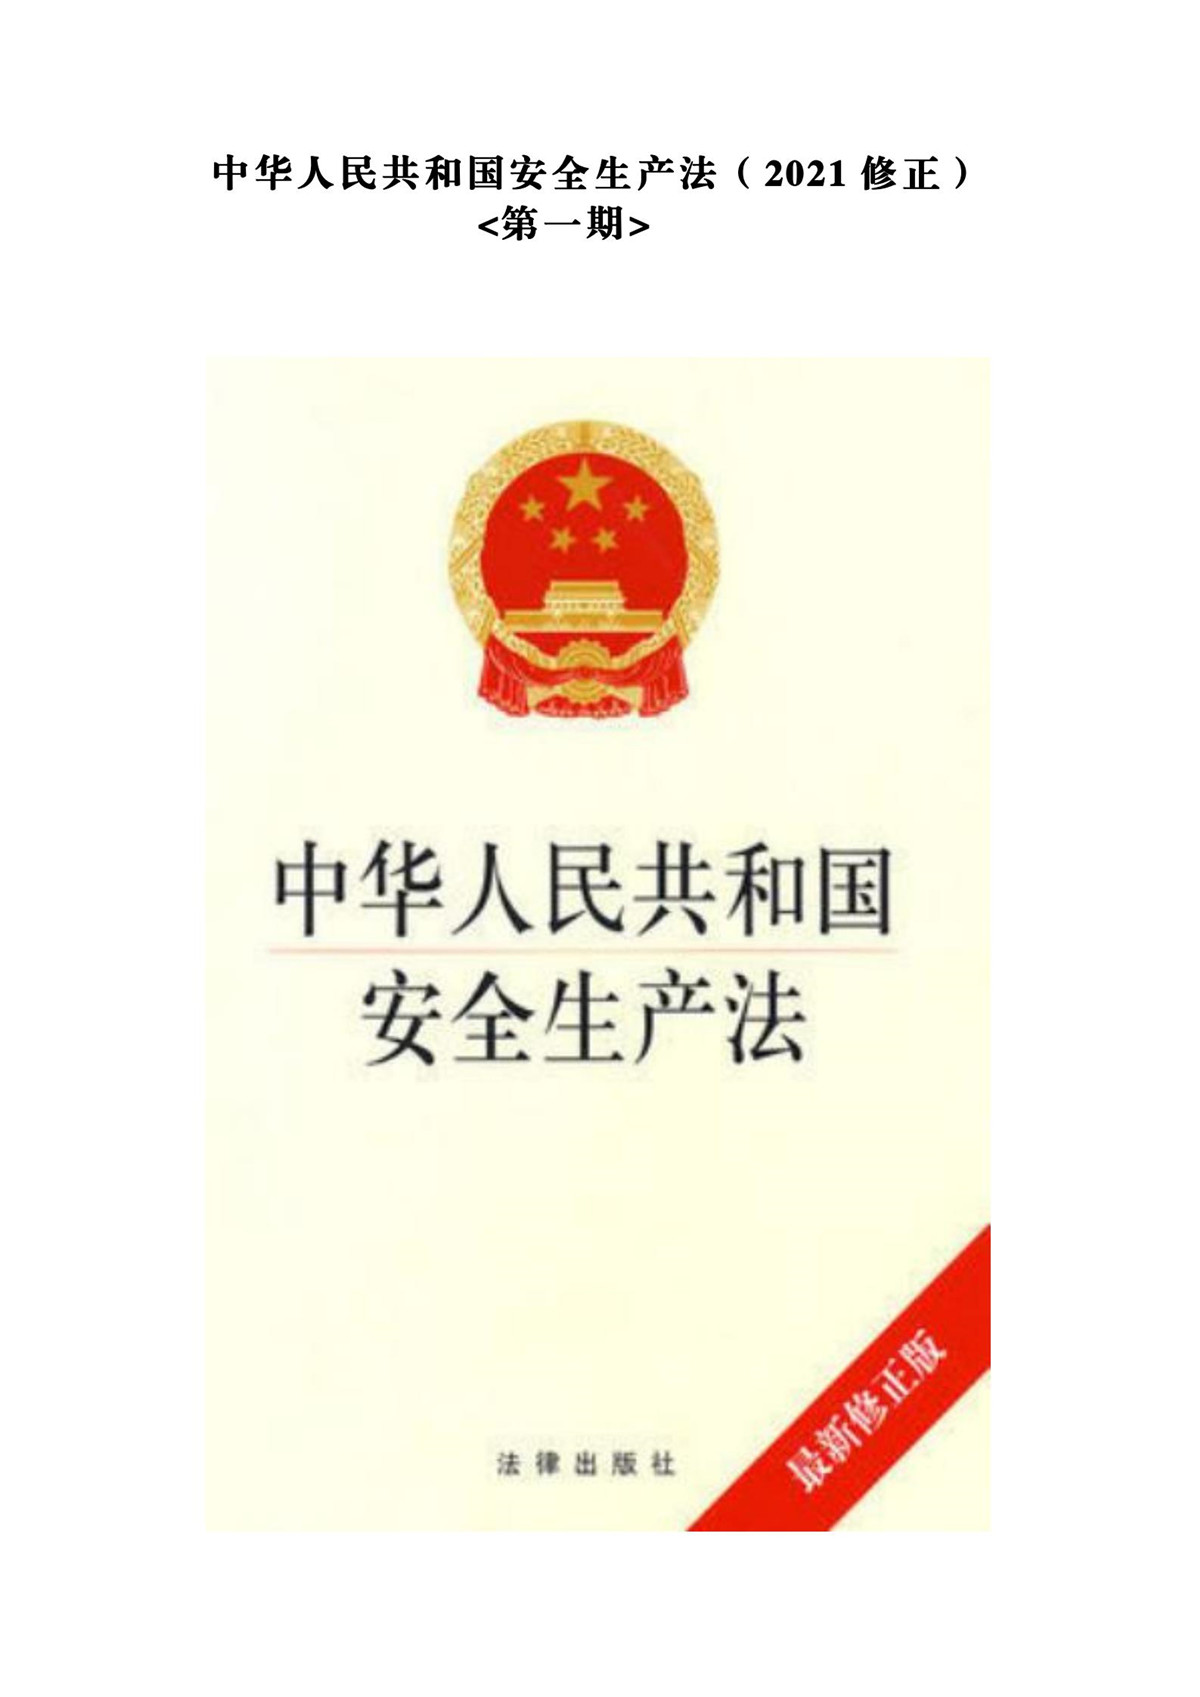 中华人民共和国安全生产法（2021修正）第一期_00.jpg